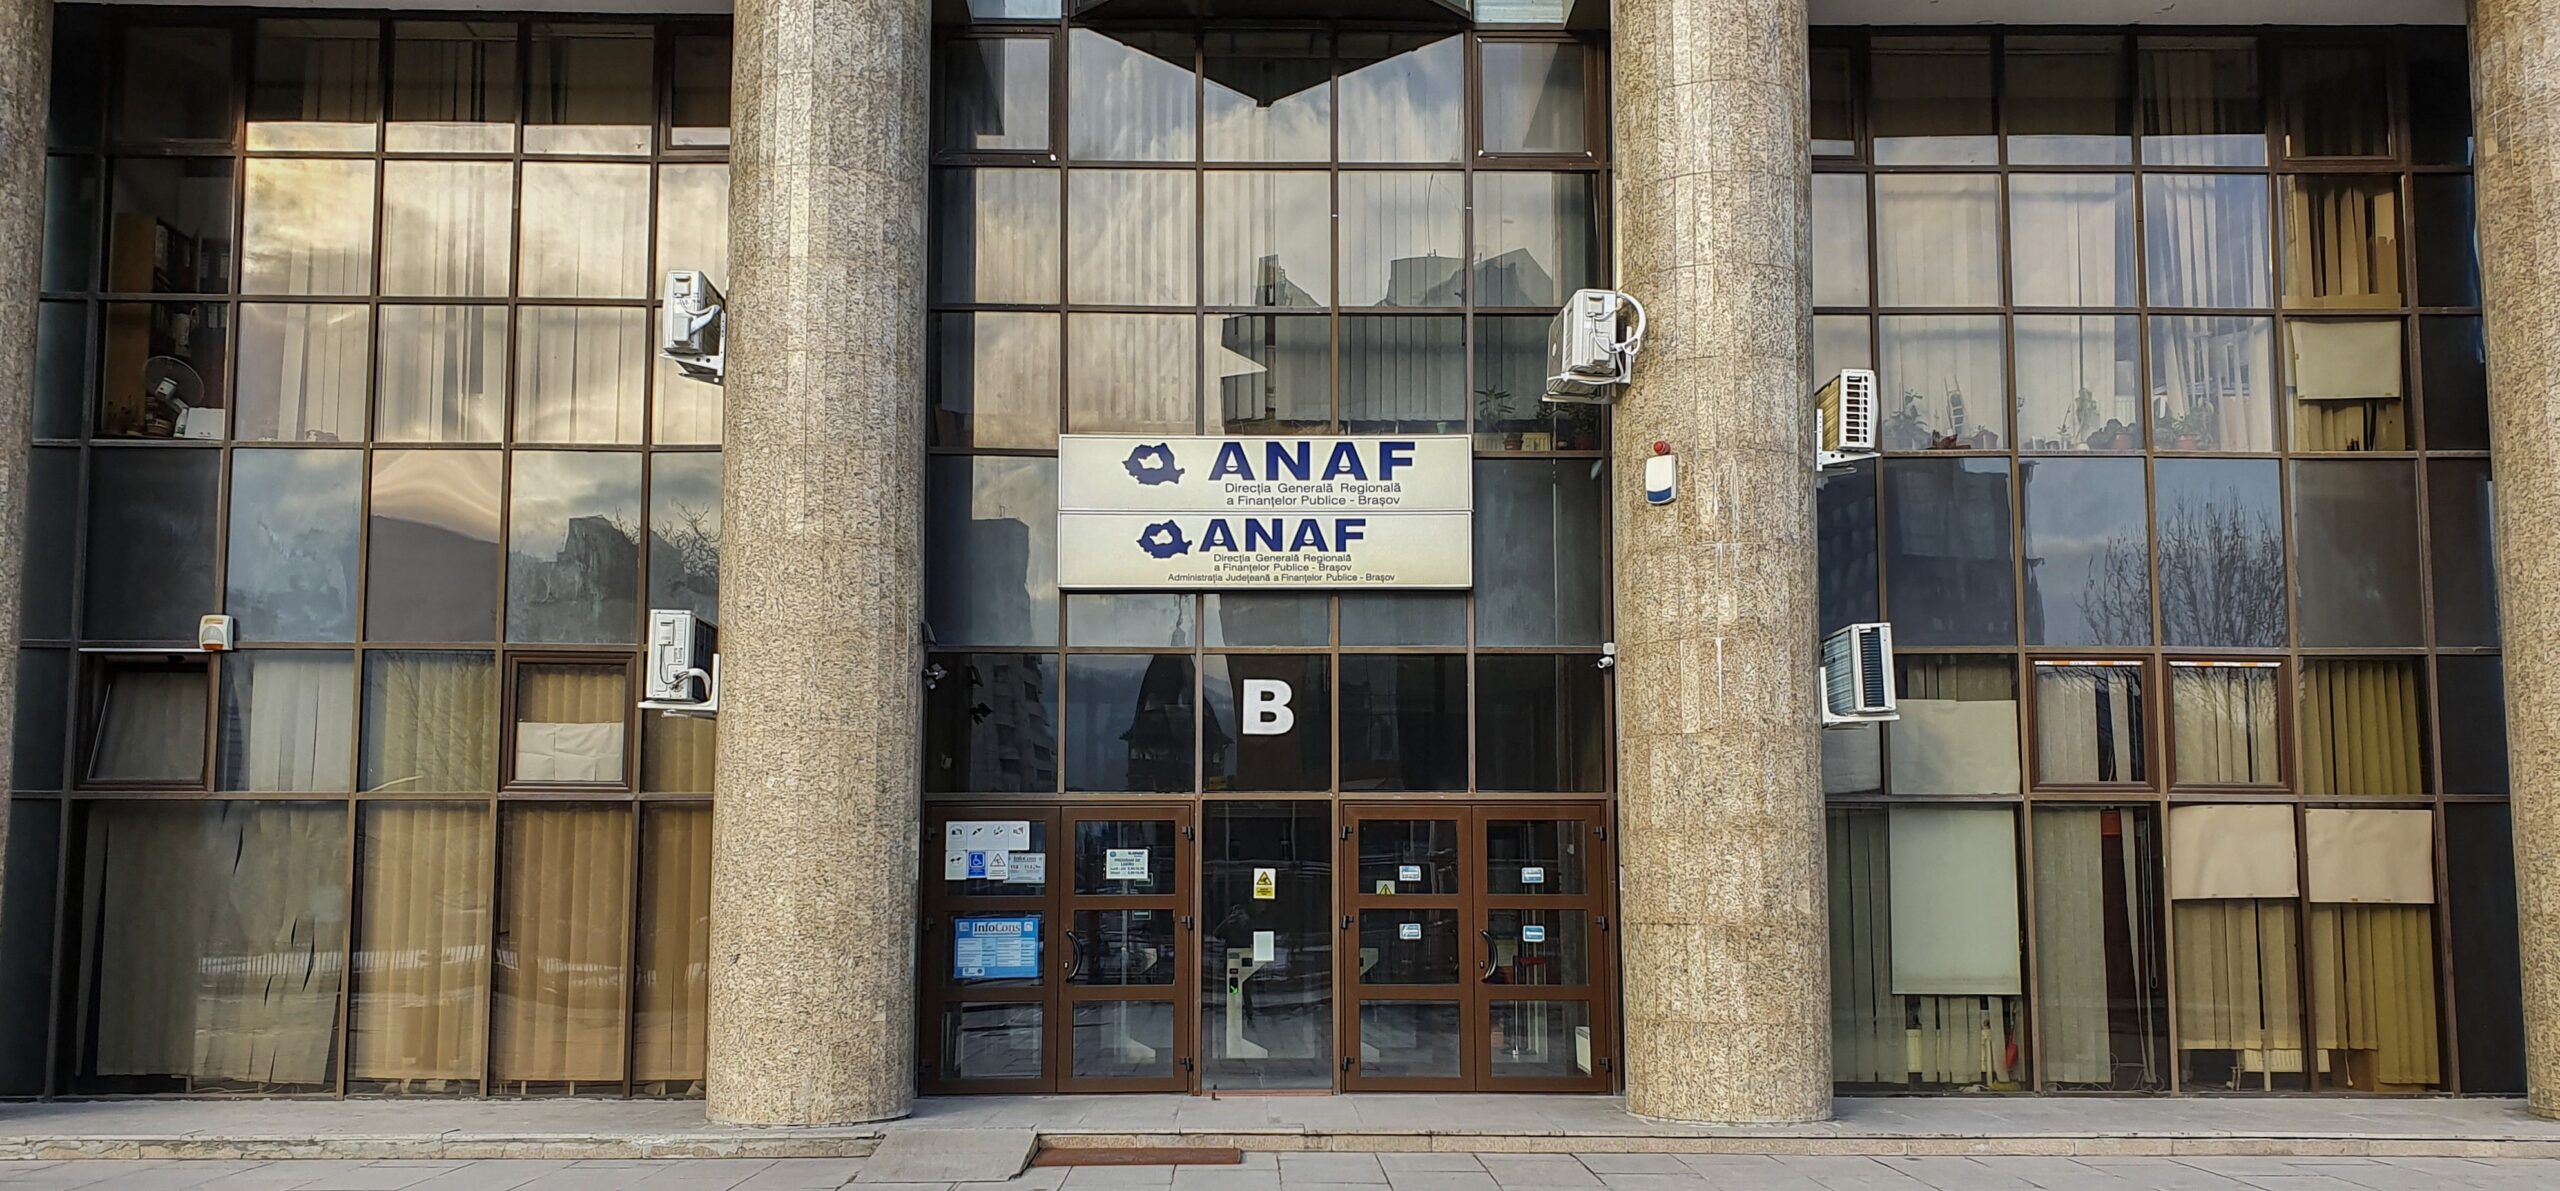 Exteriorul ANAF, Agenția Națională de Administrare Fiscală, Direcția Generală a Finanțelor Publice Brașov,